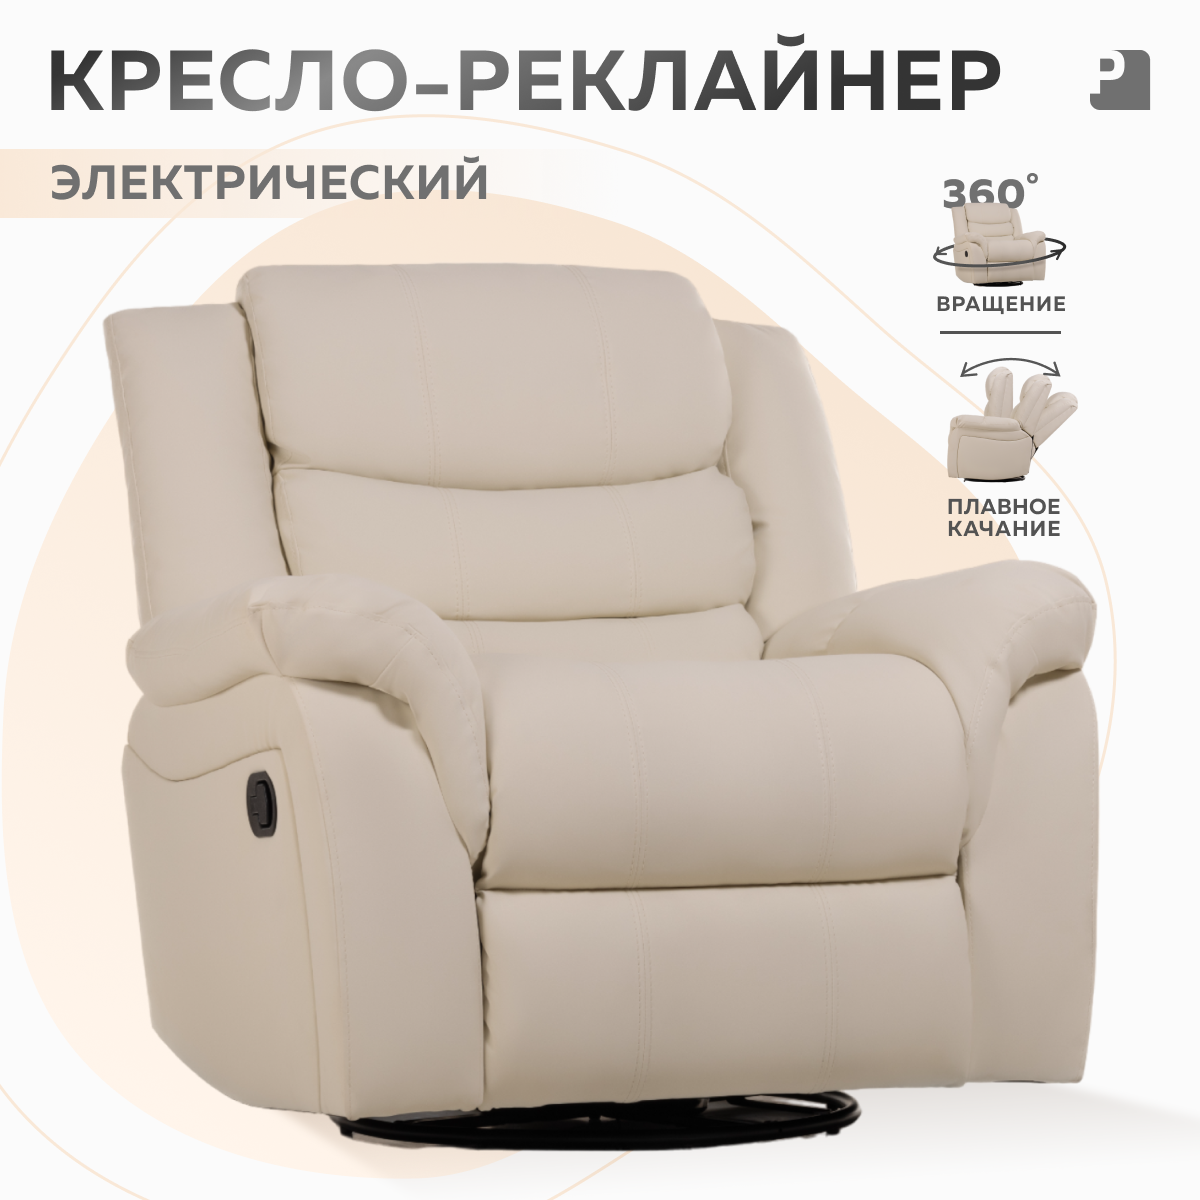 Кресло реклайнер-качалка электрический PEREVALOV Cloud Бежевый, экокожа